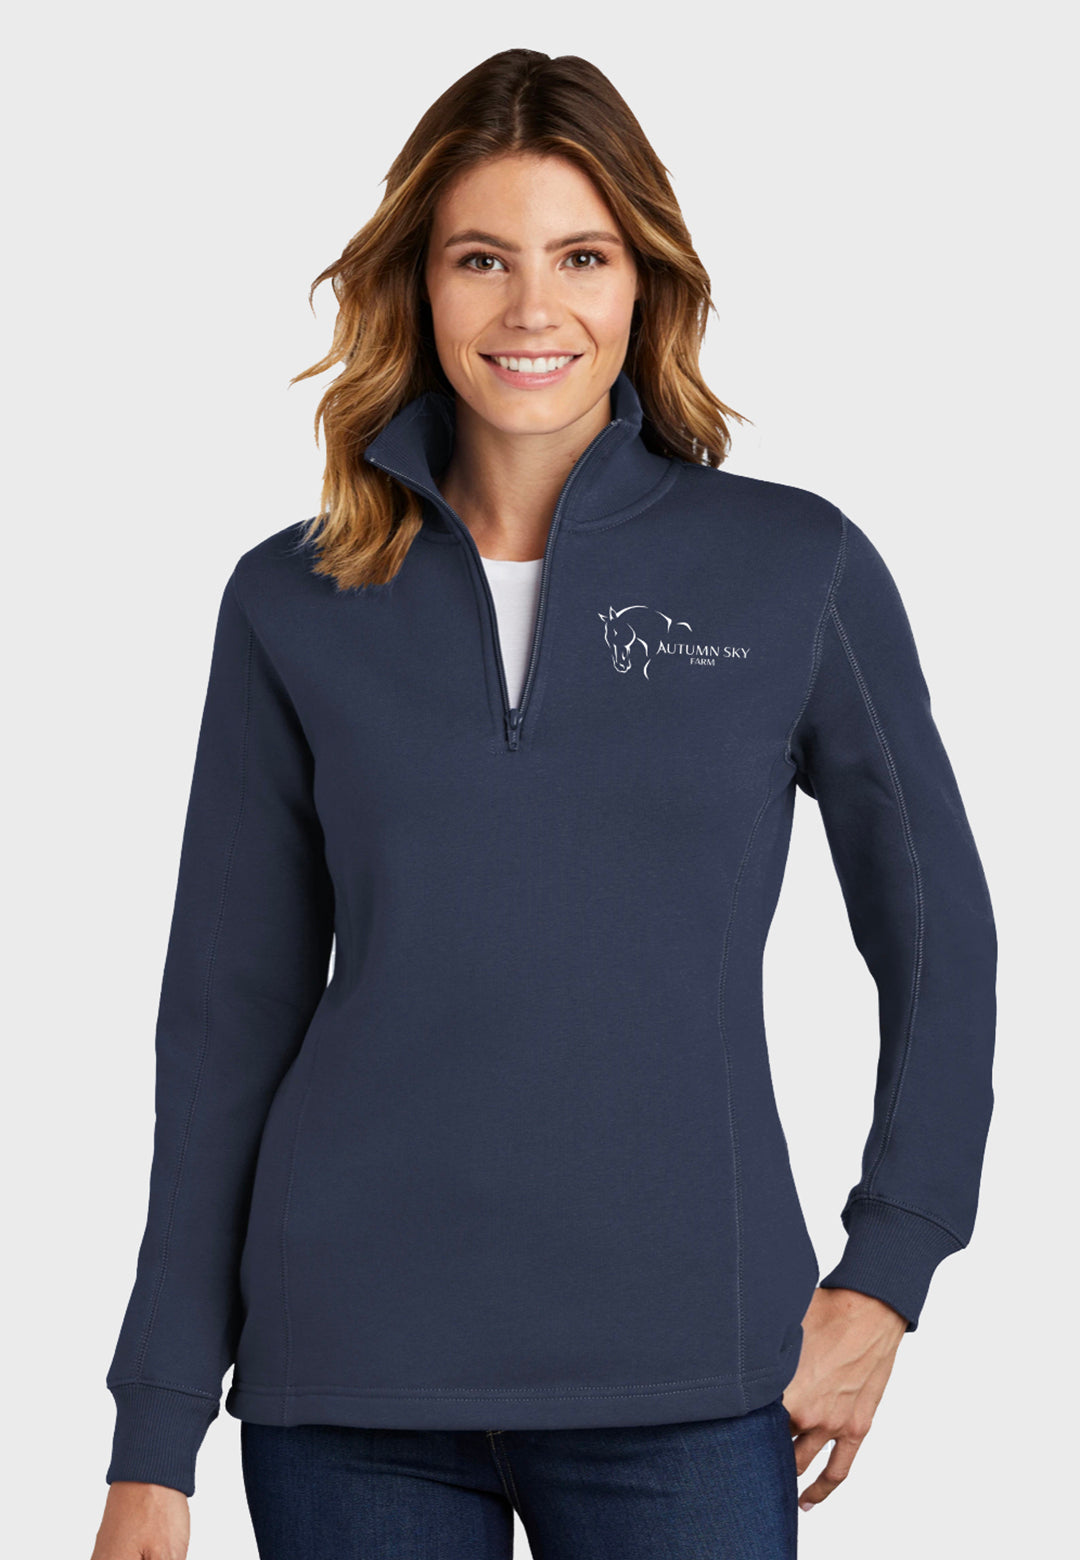 Autumn Sky Farm Sport-Tek® Ladies 1/4-Zip Sweatshirt - Navy